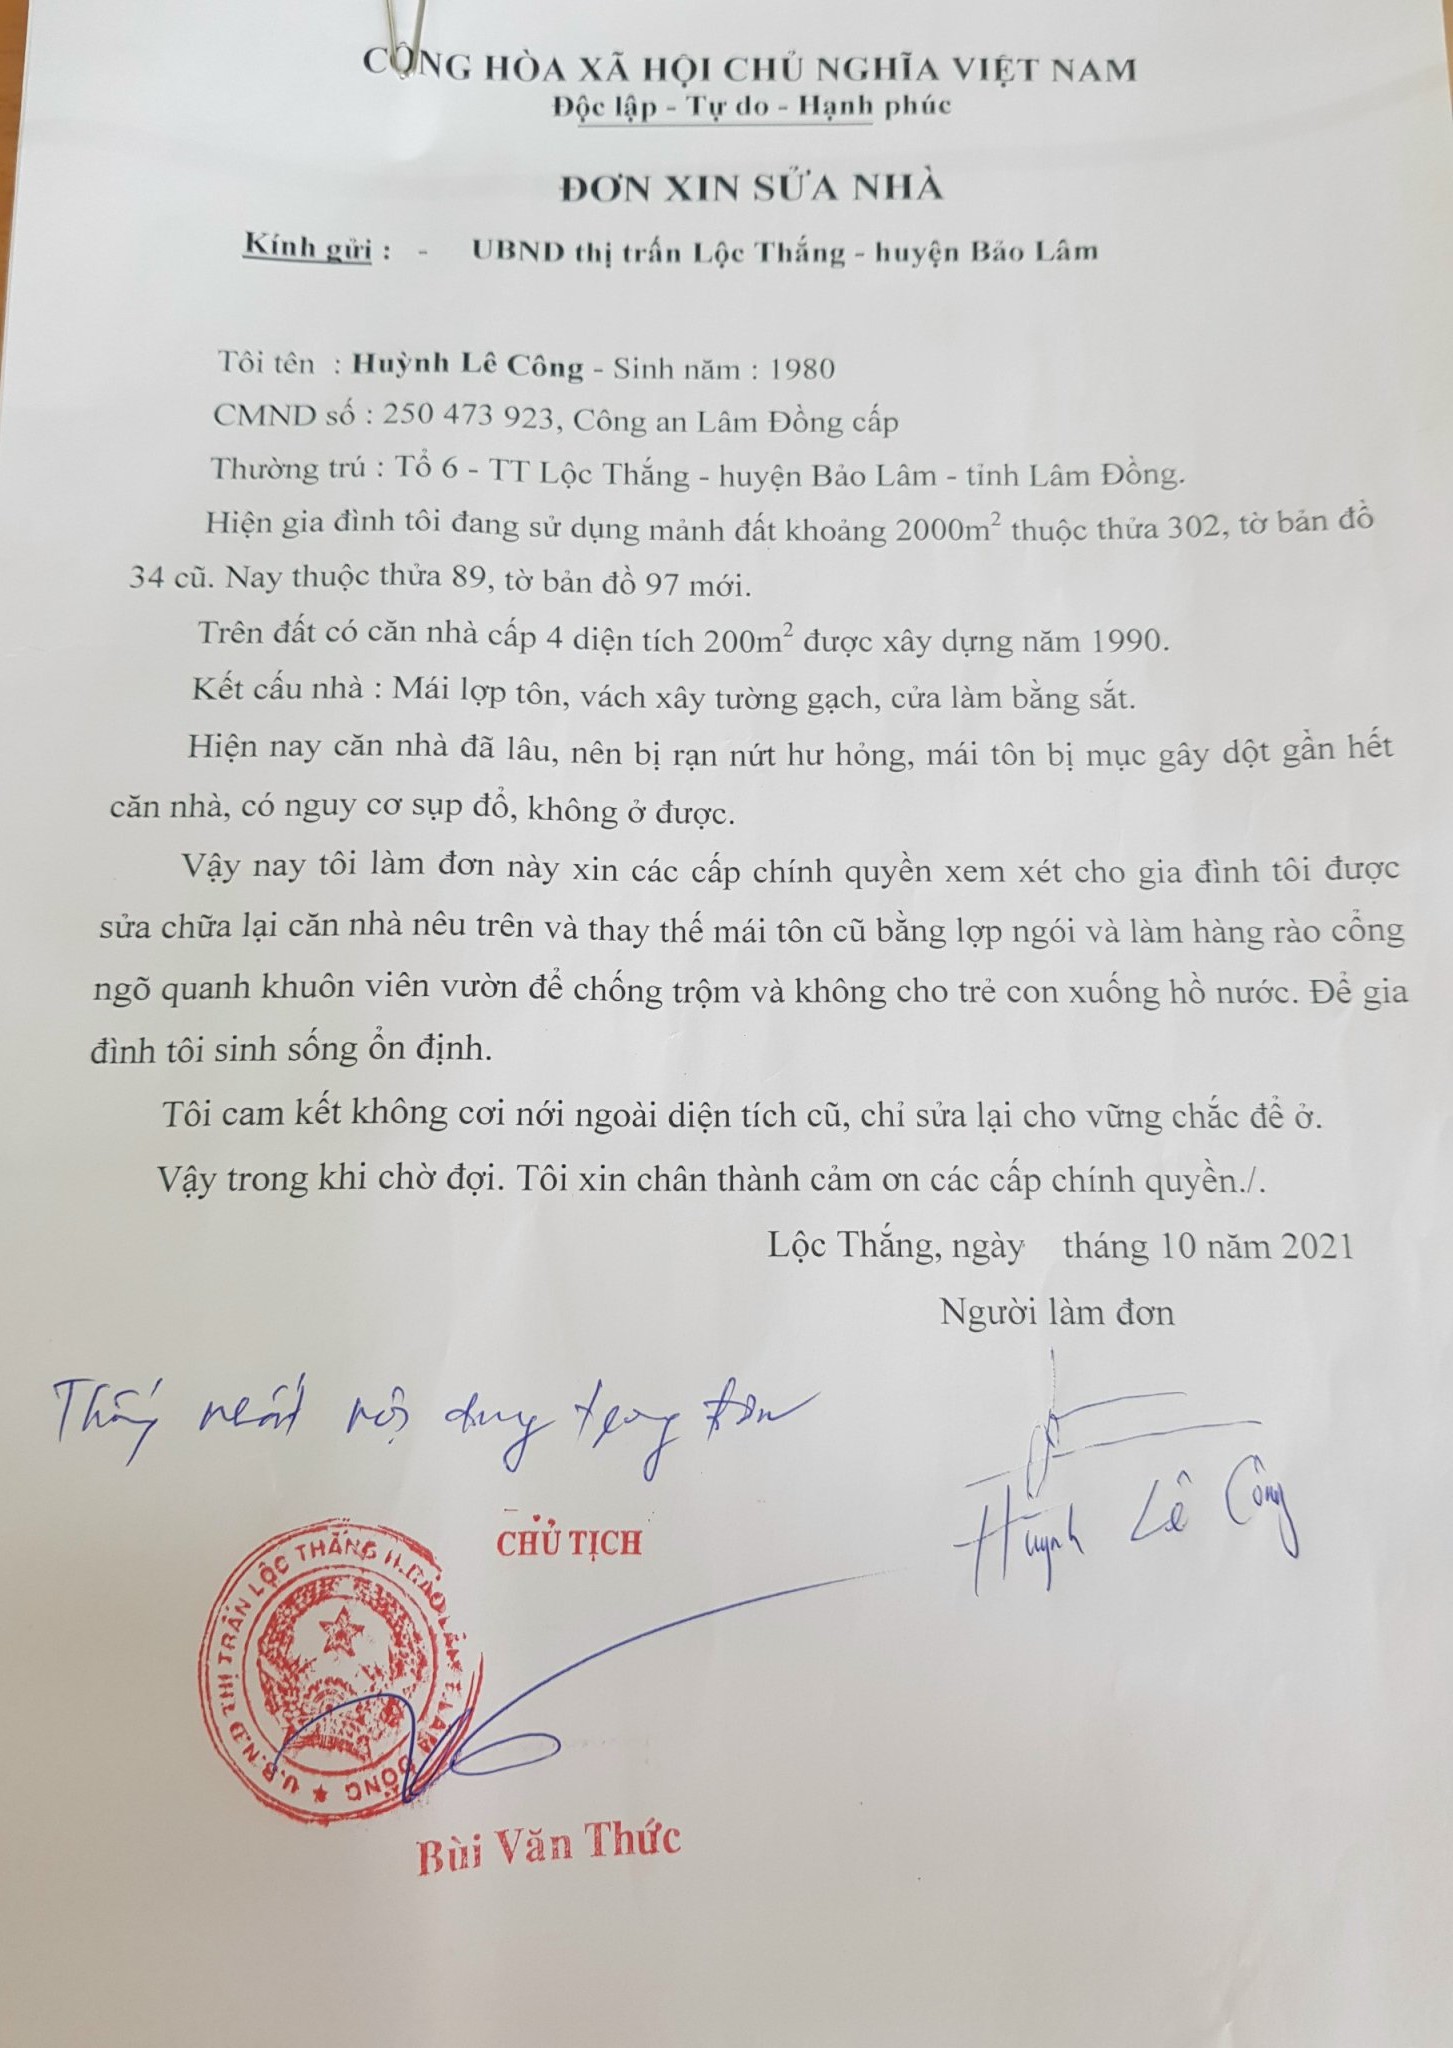 Đơn xin sửa nhà có bút phê của Chủ tịch UBND thị trấn Lộc Thắng khi đó là ông Bùi Văn Thức